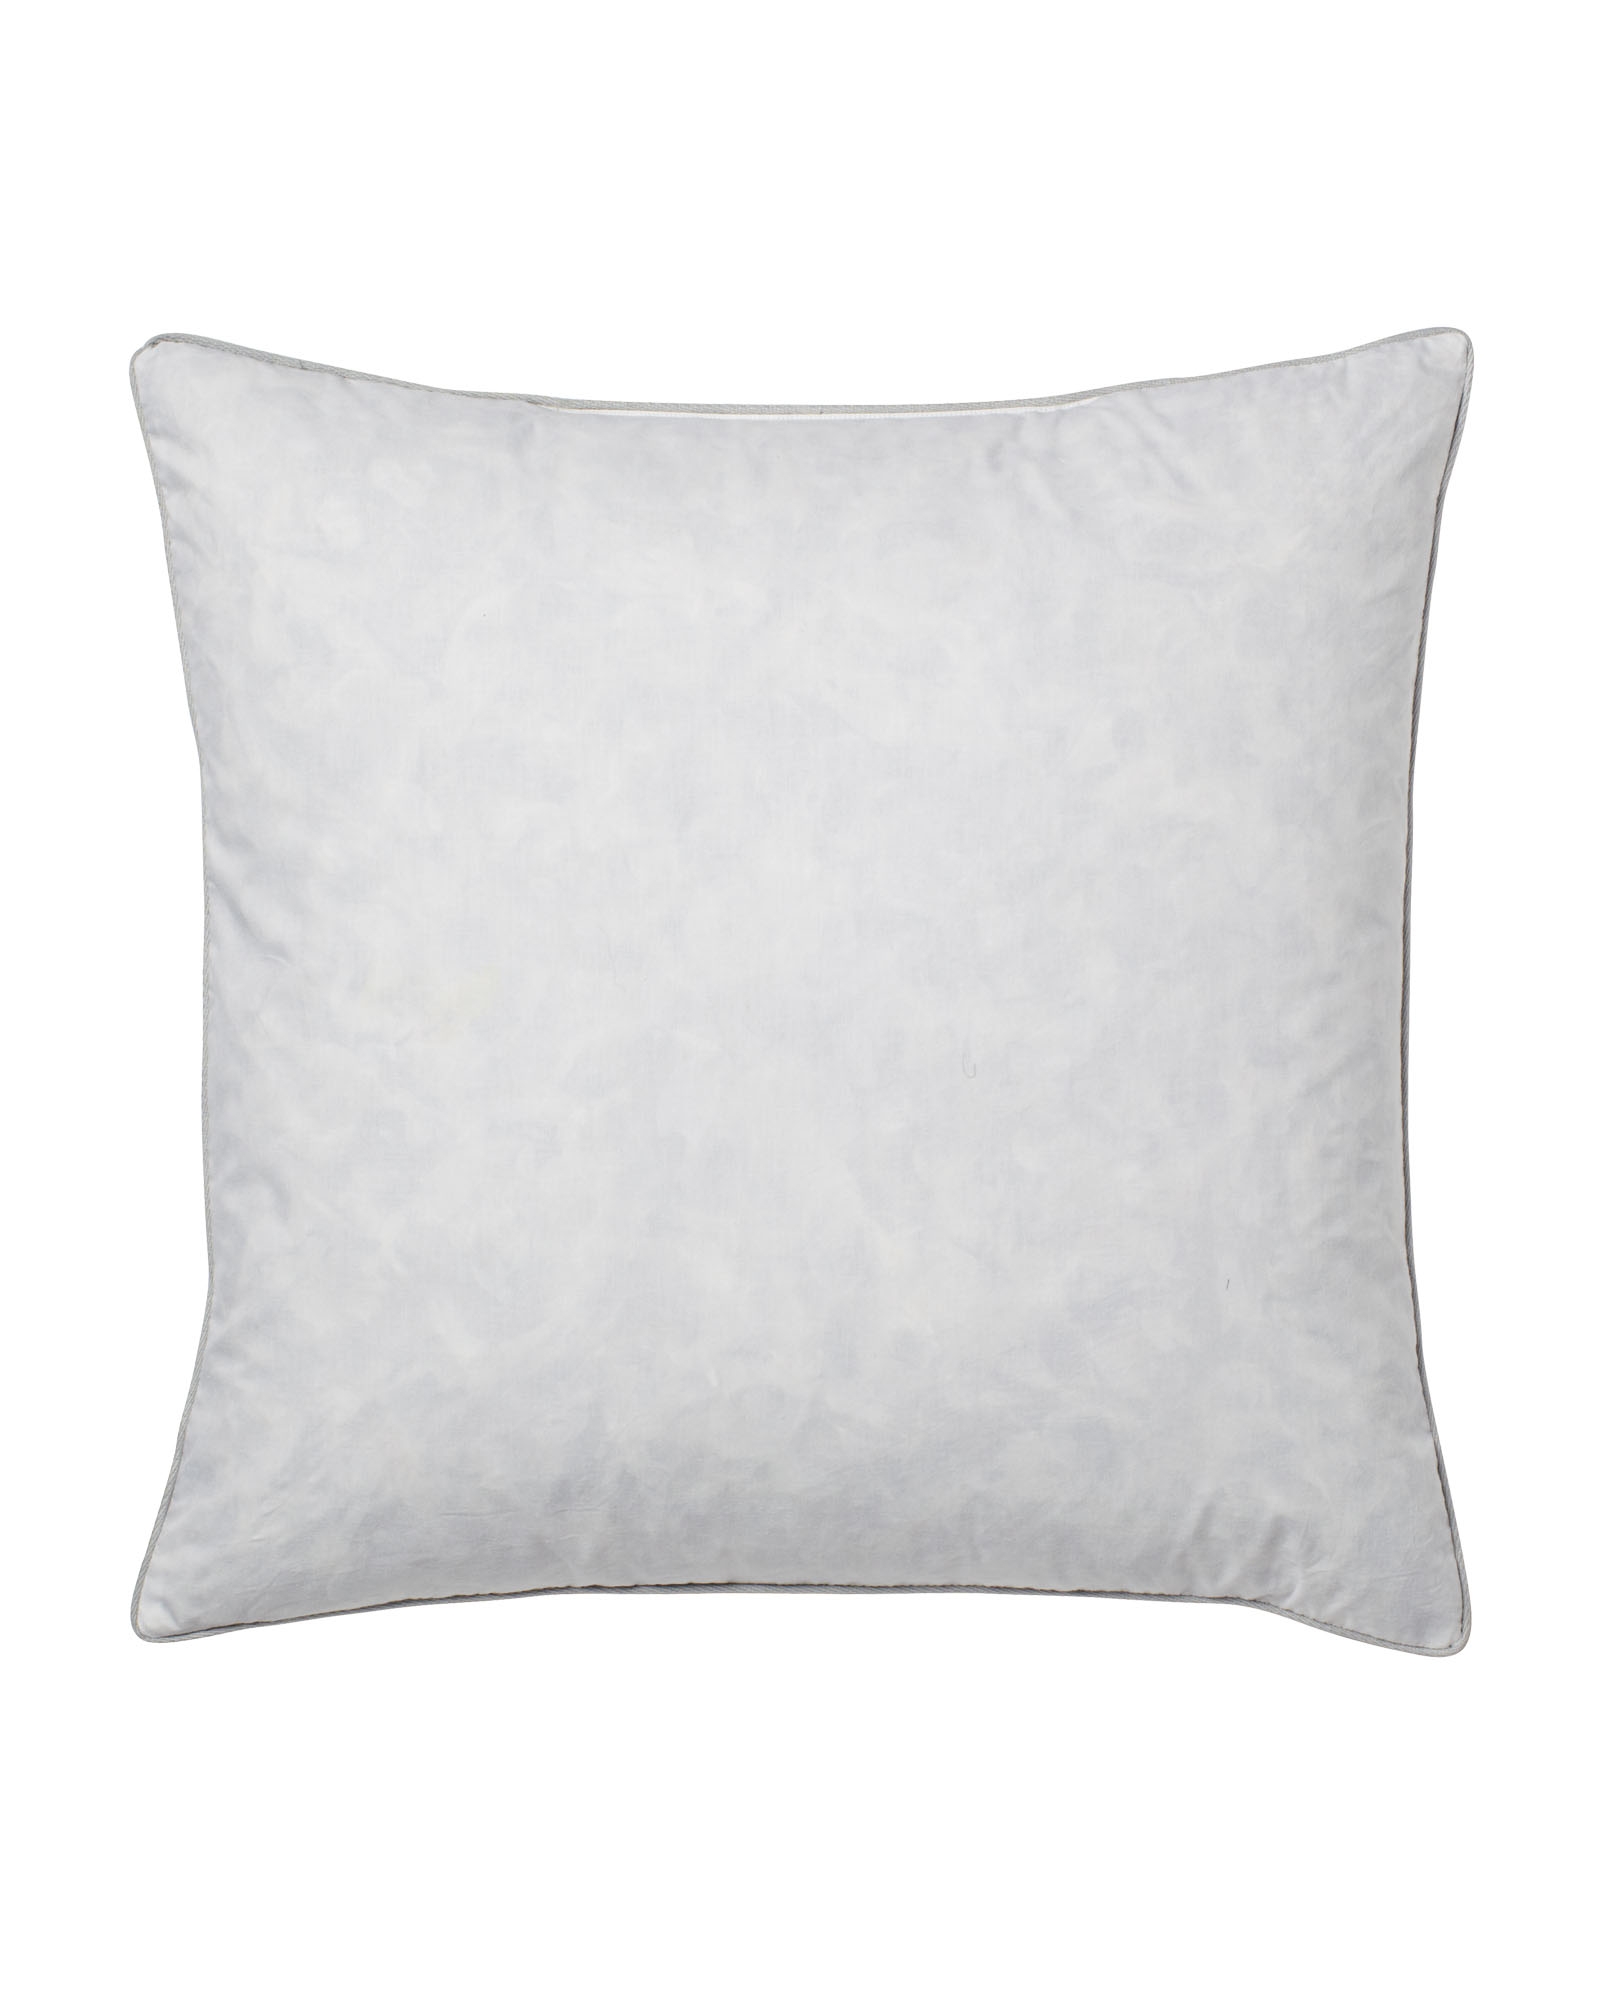 Pillow Insert - 20â€ SQ - Image 0